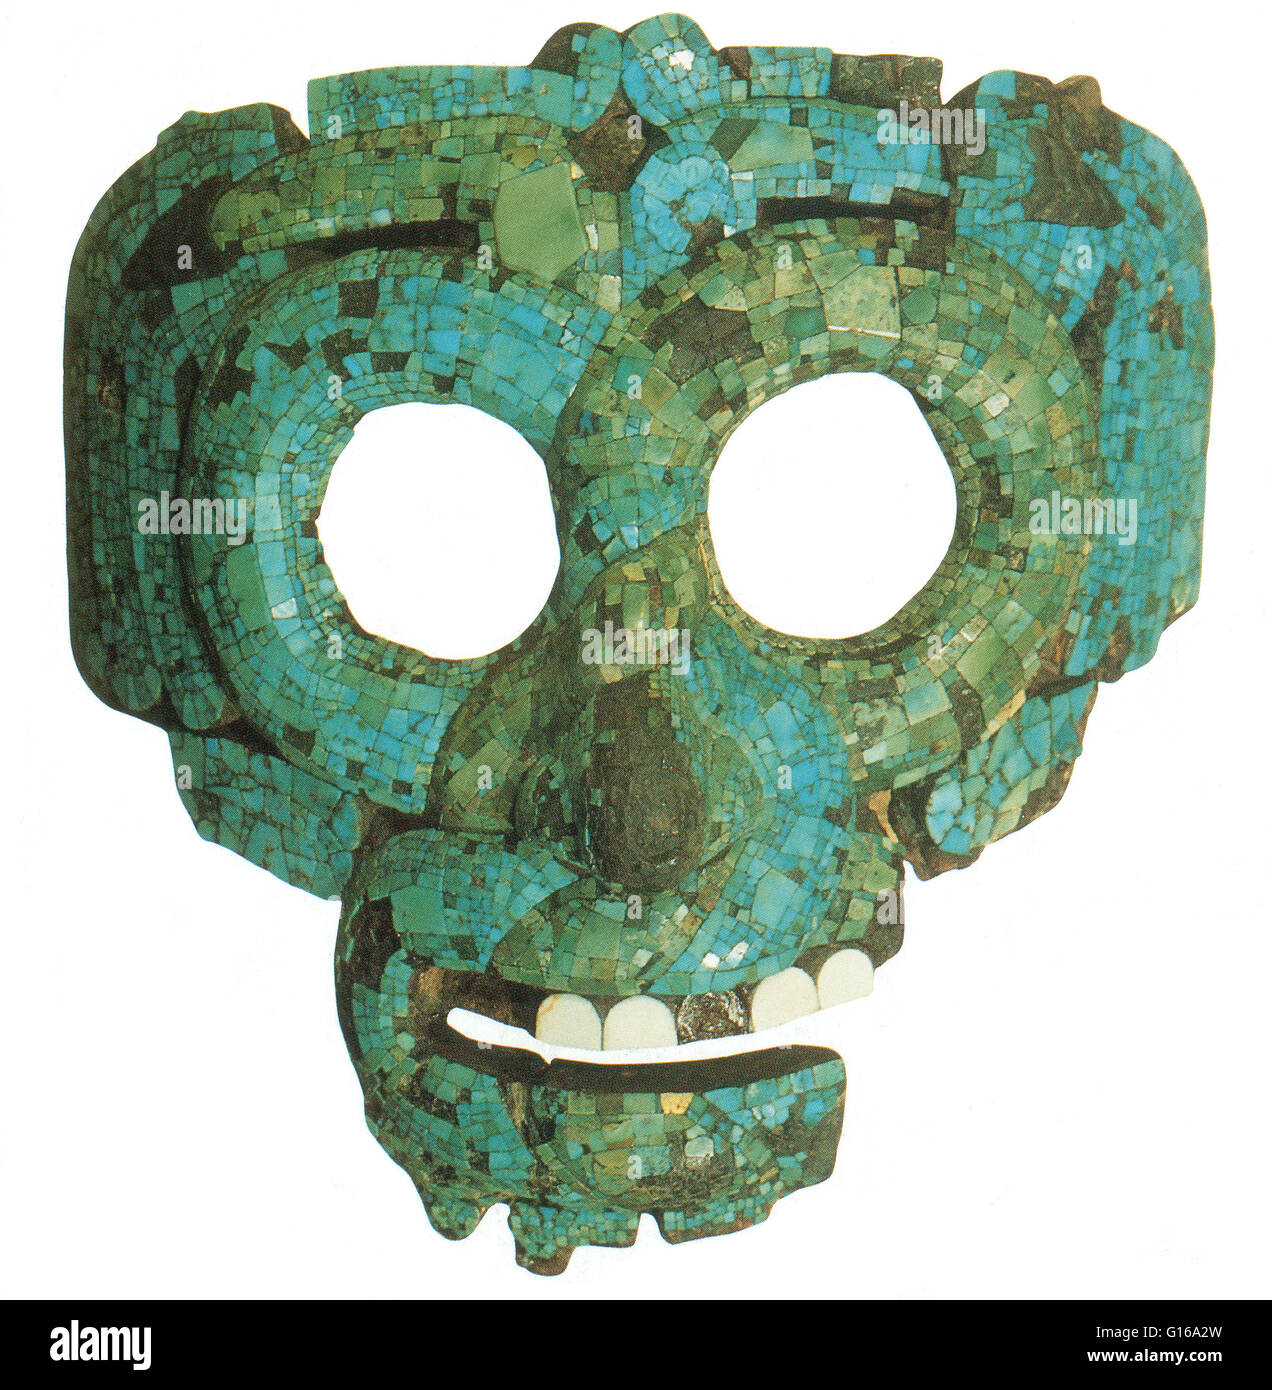 Máscara de mosaico turquesa de Quetzalcoatl, la serpiente emplumada. Quetzalcoatl es una deidad Mesoamericana cuyo nombre proviene de la lengua náhuatl y tiene el significado de "serpiente emplumada". Quetzalcoatl estaba relacionada con los dioses del viento, de Venus, del amanecer, Foto de stock